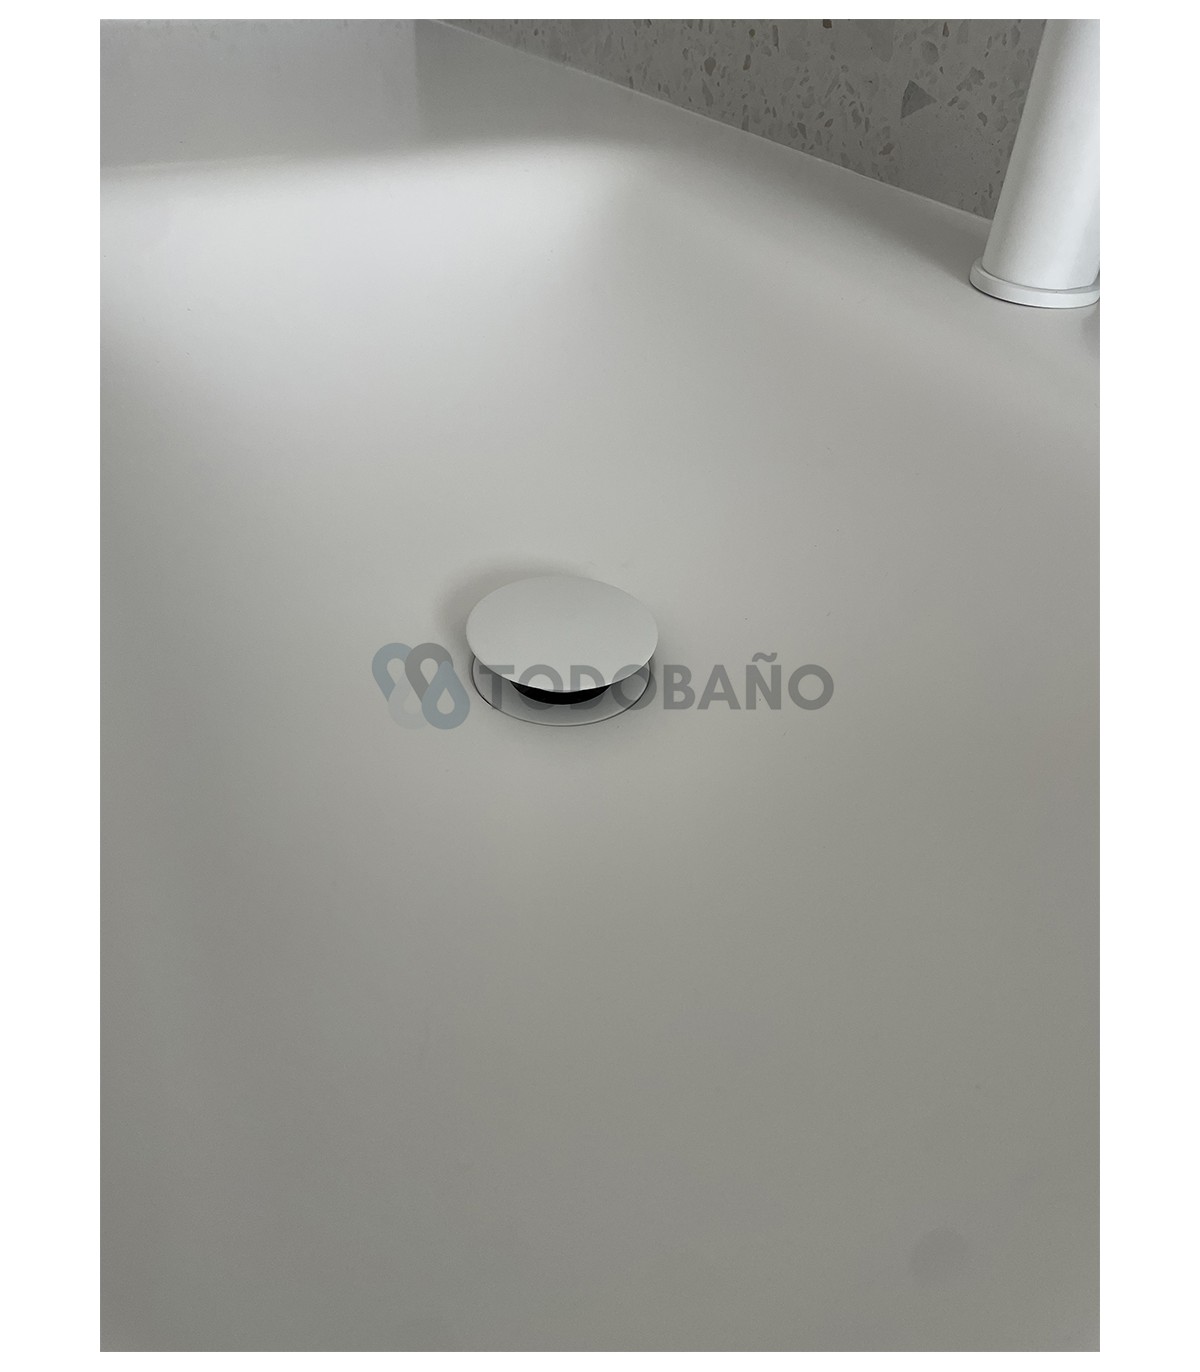 Válvula lavabo click clack cuadrada blanca | Ferpisan Suministros